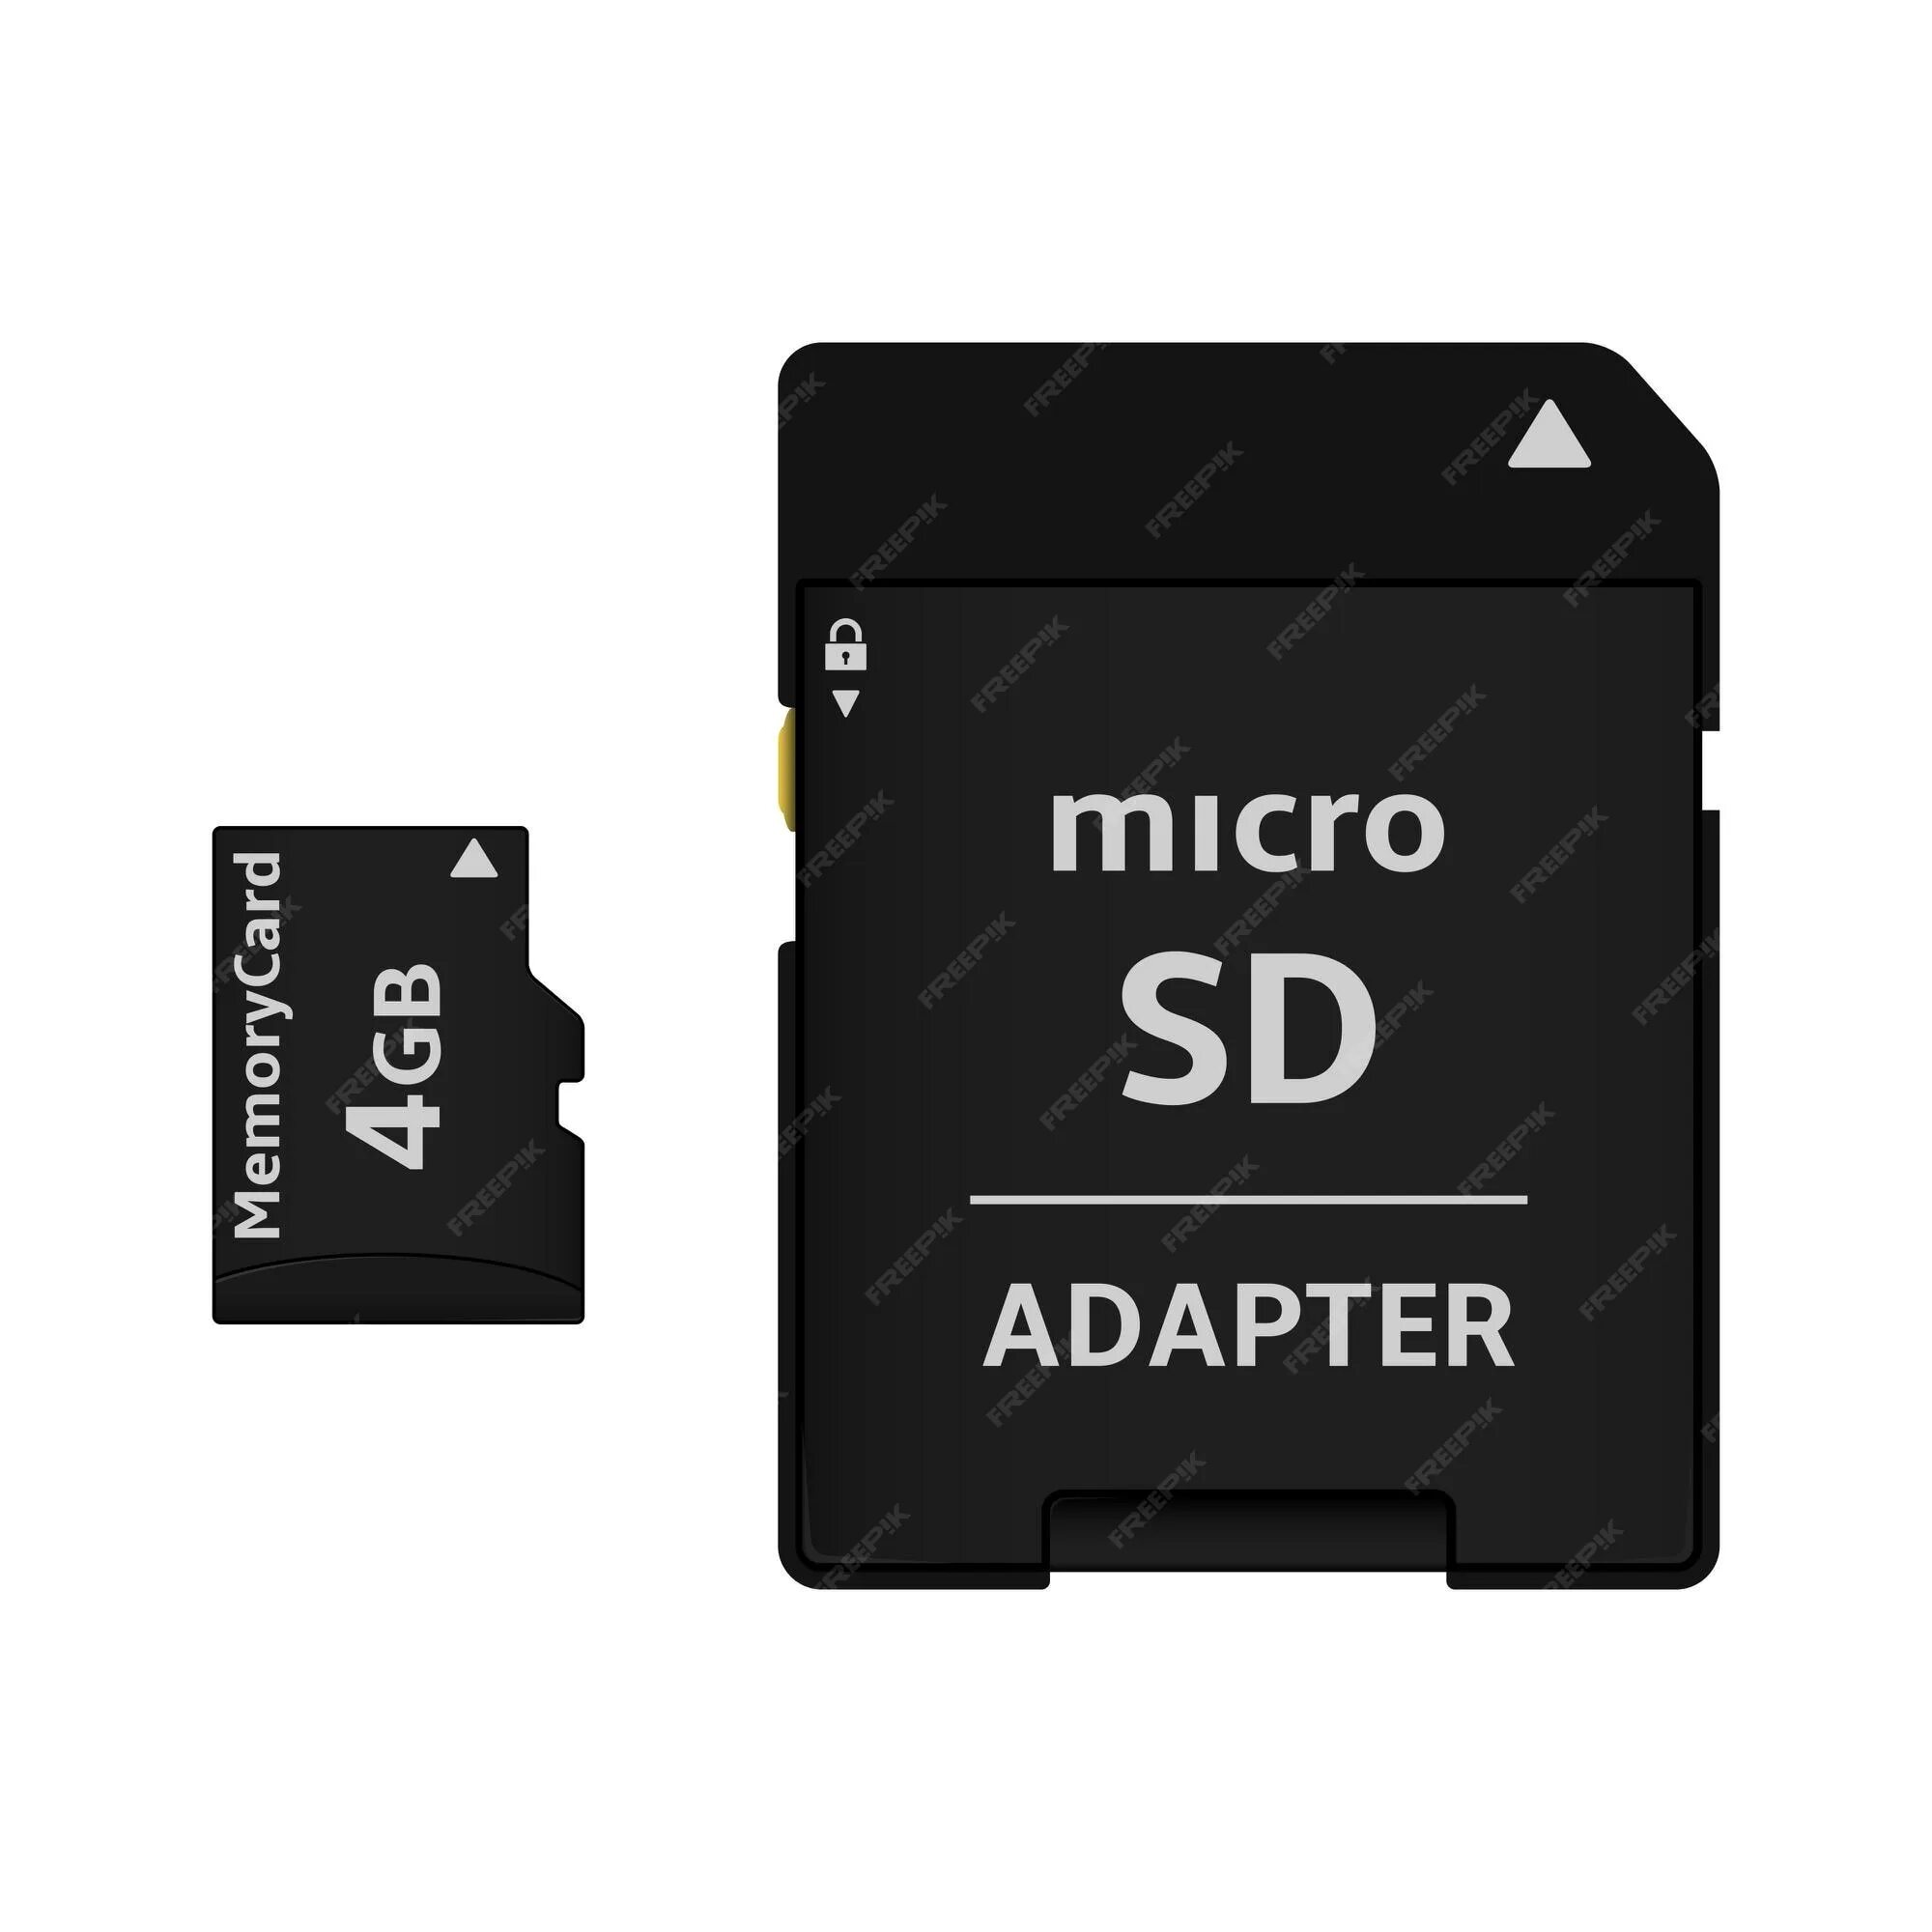 Флешка для телефона 128 гб. Адаптер микро СД на СД. Адаптер для SD карты. Адаптер SD MICROSD. Переходник на карту памяти микро СД.